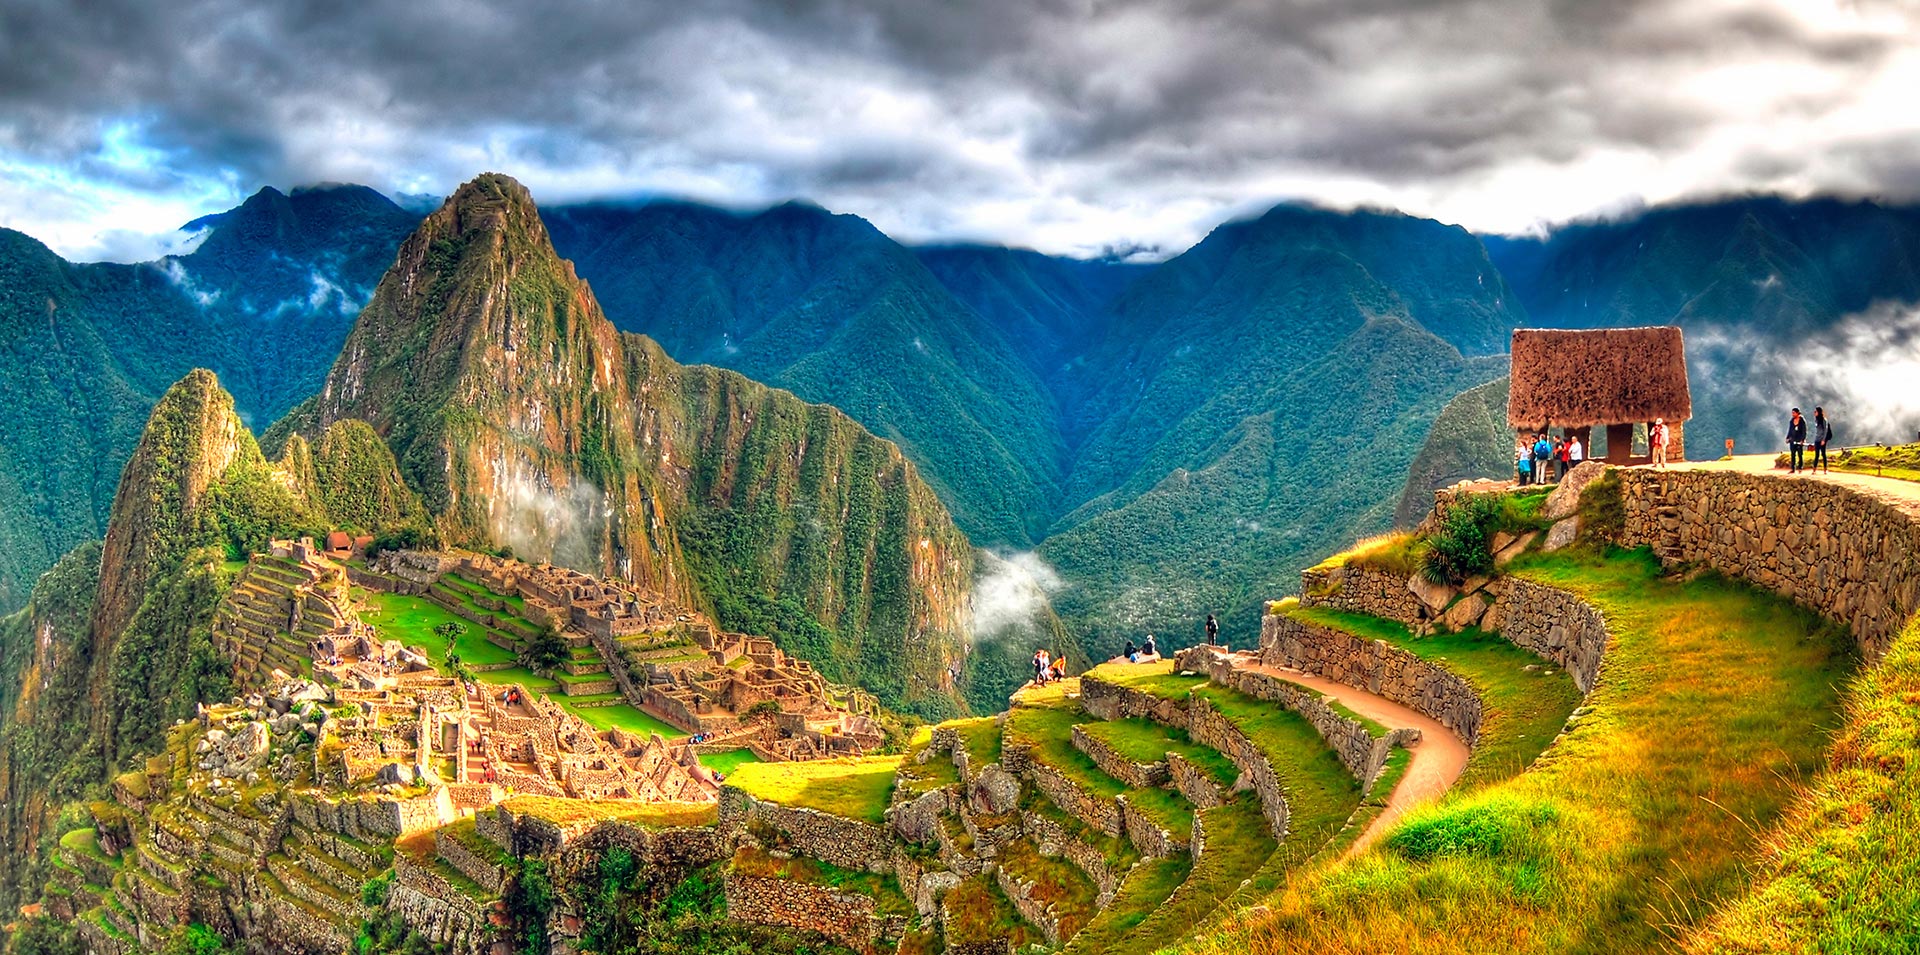 Ciudadela de Machu Picchu en Perú vista desde la distancia